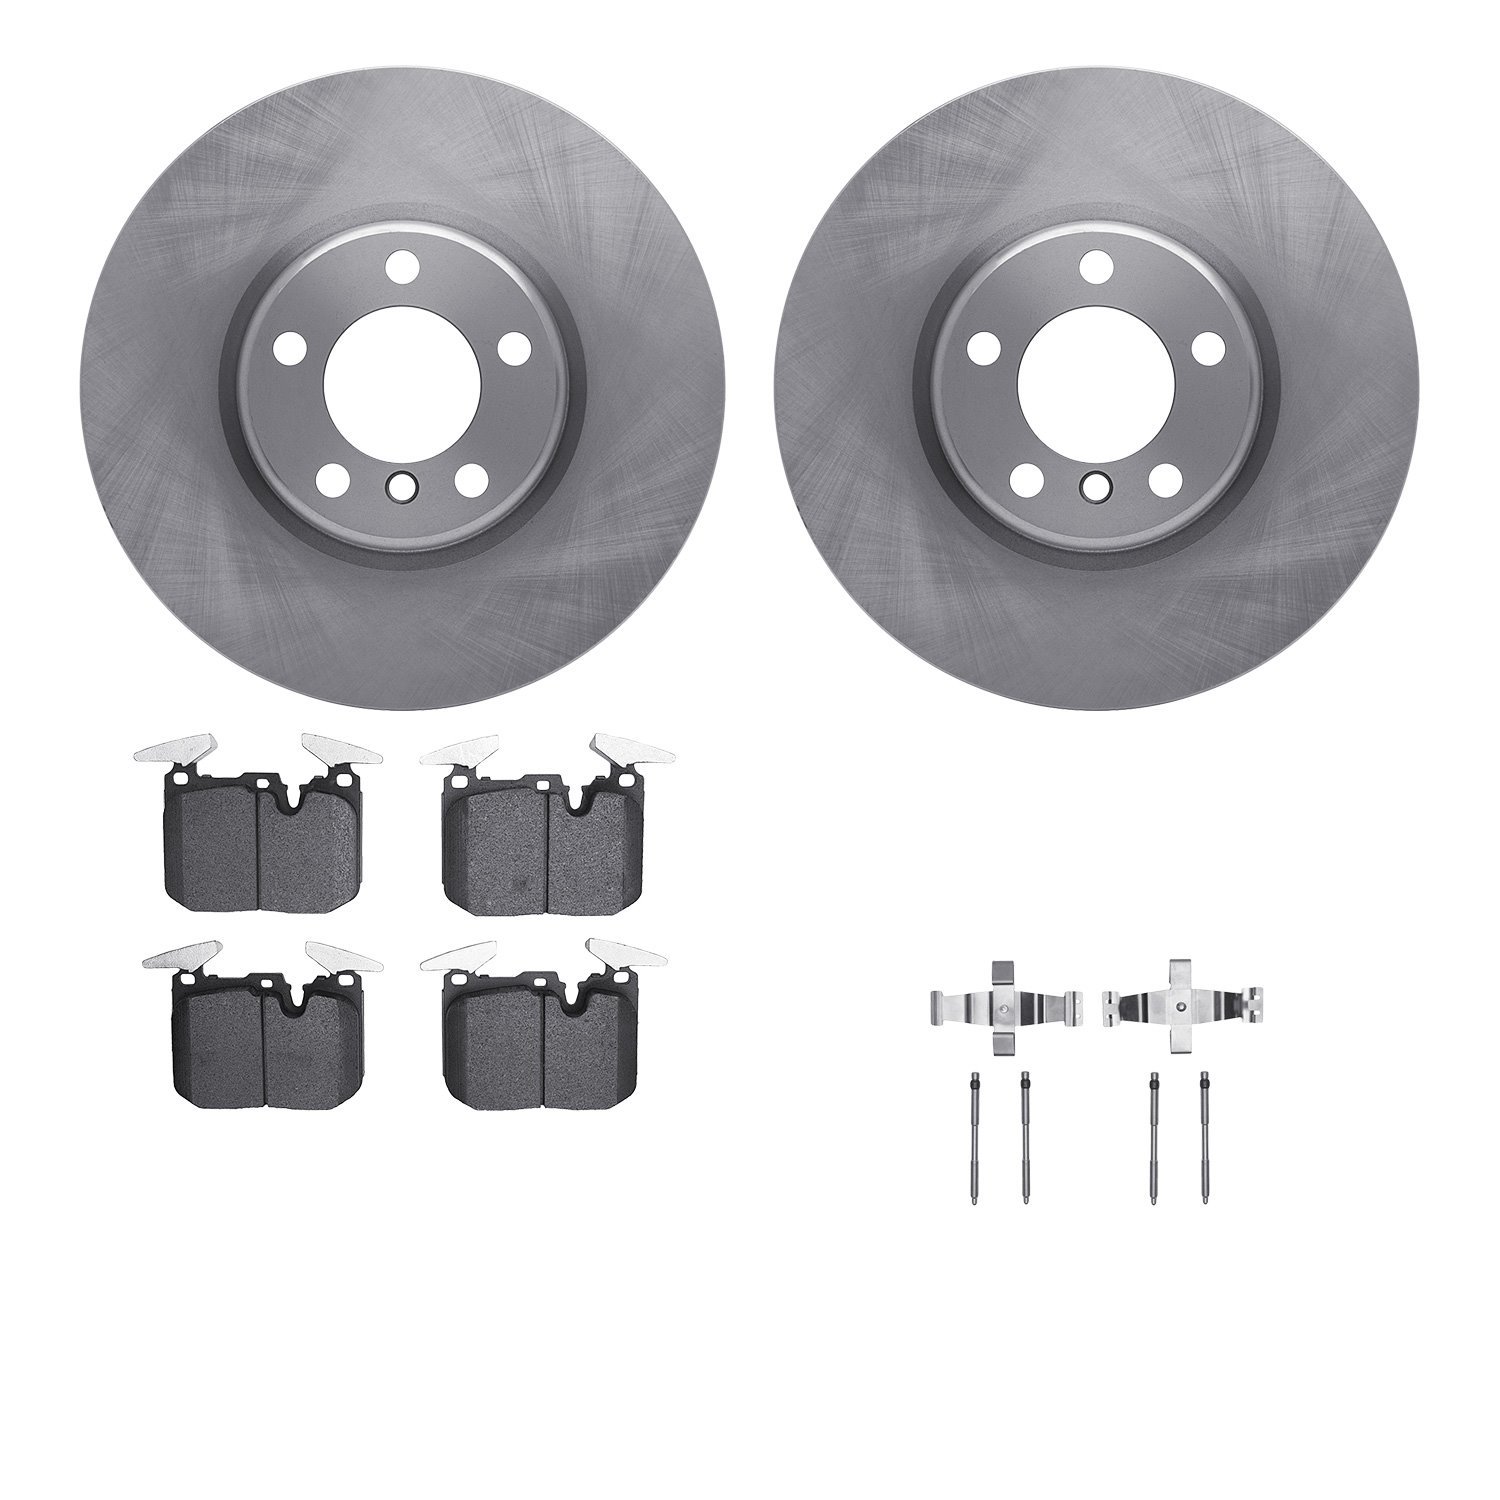 6612-31380 Brake Rotors w/5000 Euro Ceramic Brake Pads Kit with Hardware, 2012-2021 BMW, Position: Front